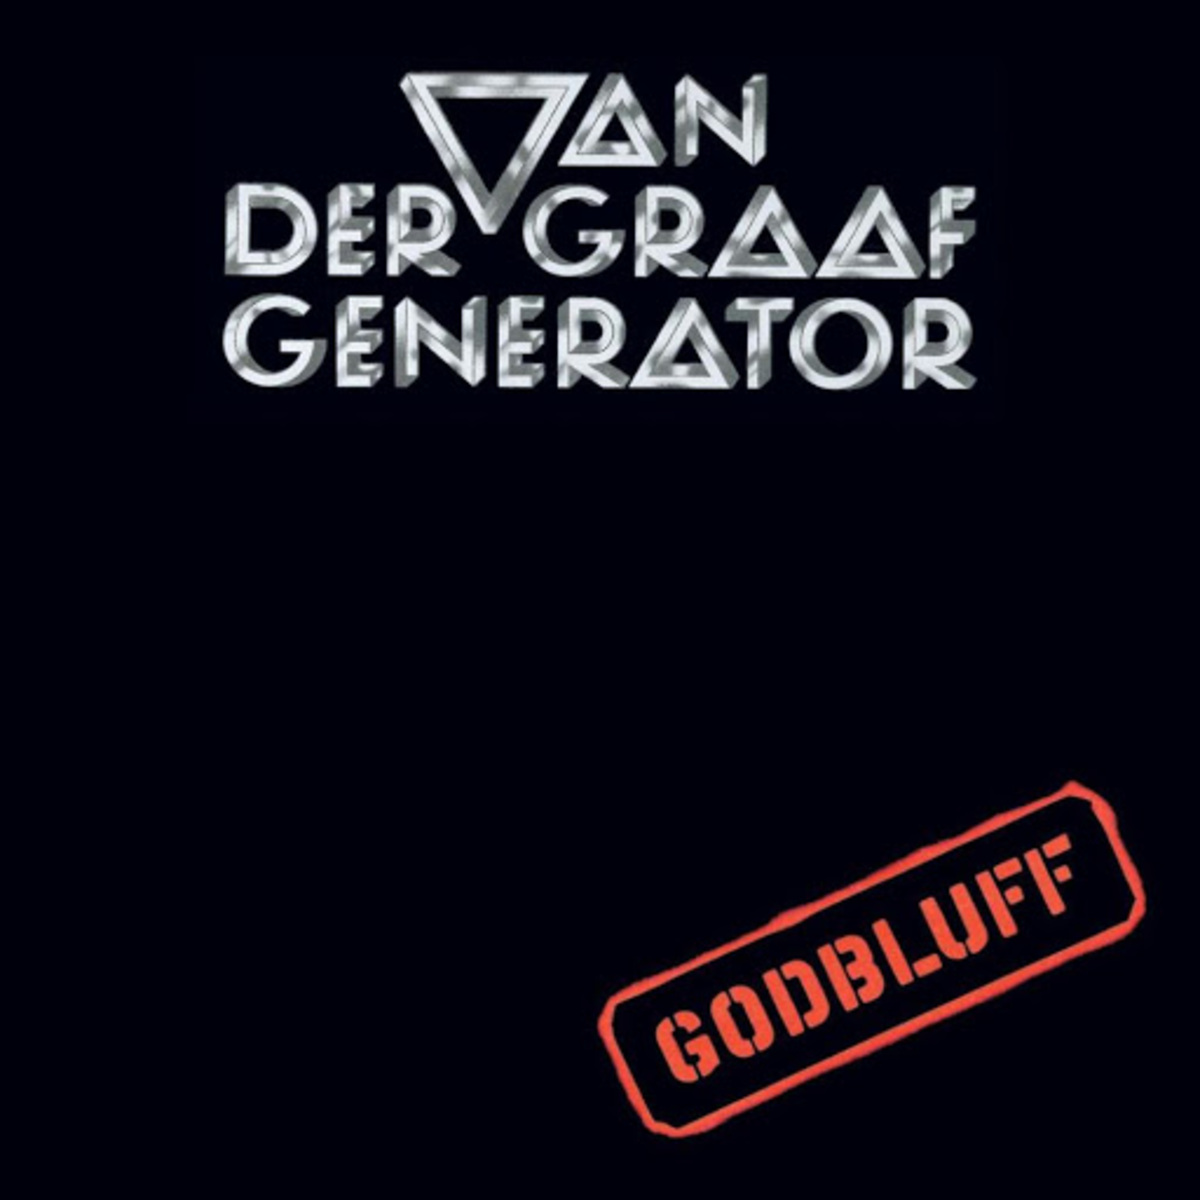 Van-der-graaf-generator-album-cover-godbluff